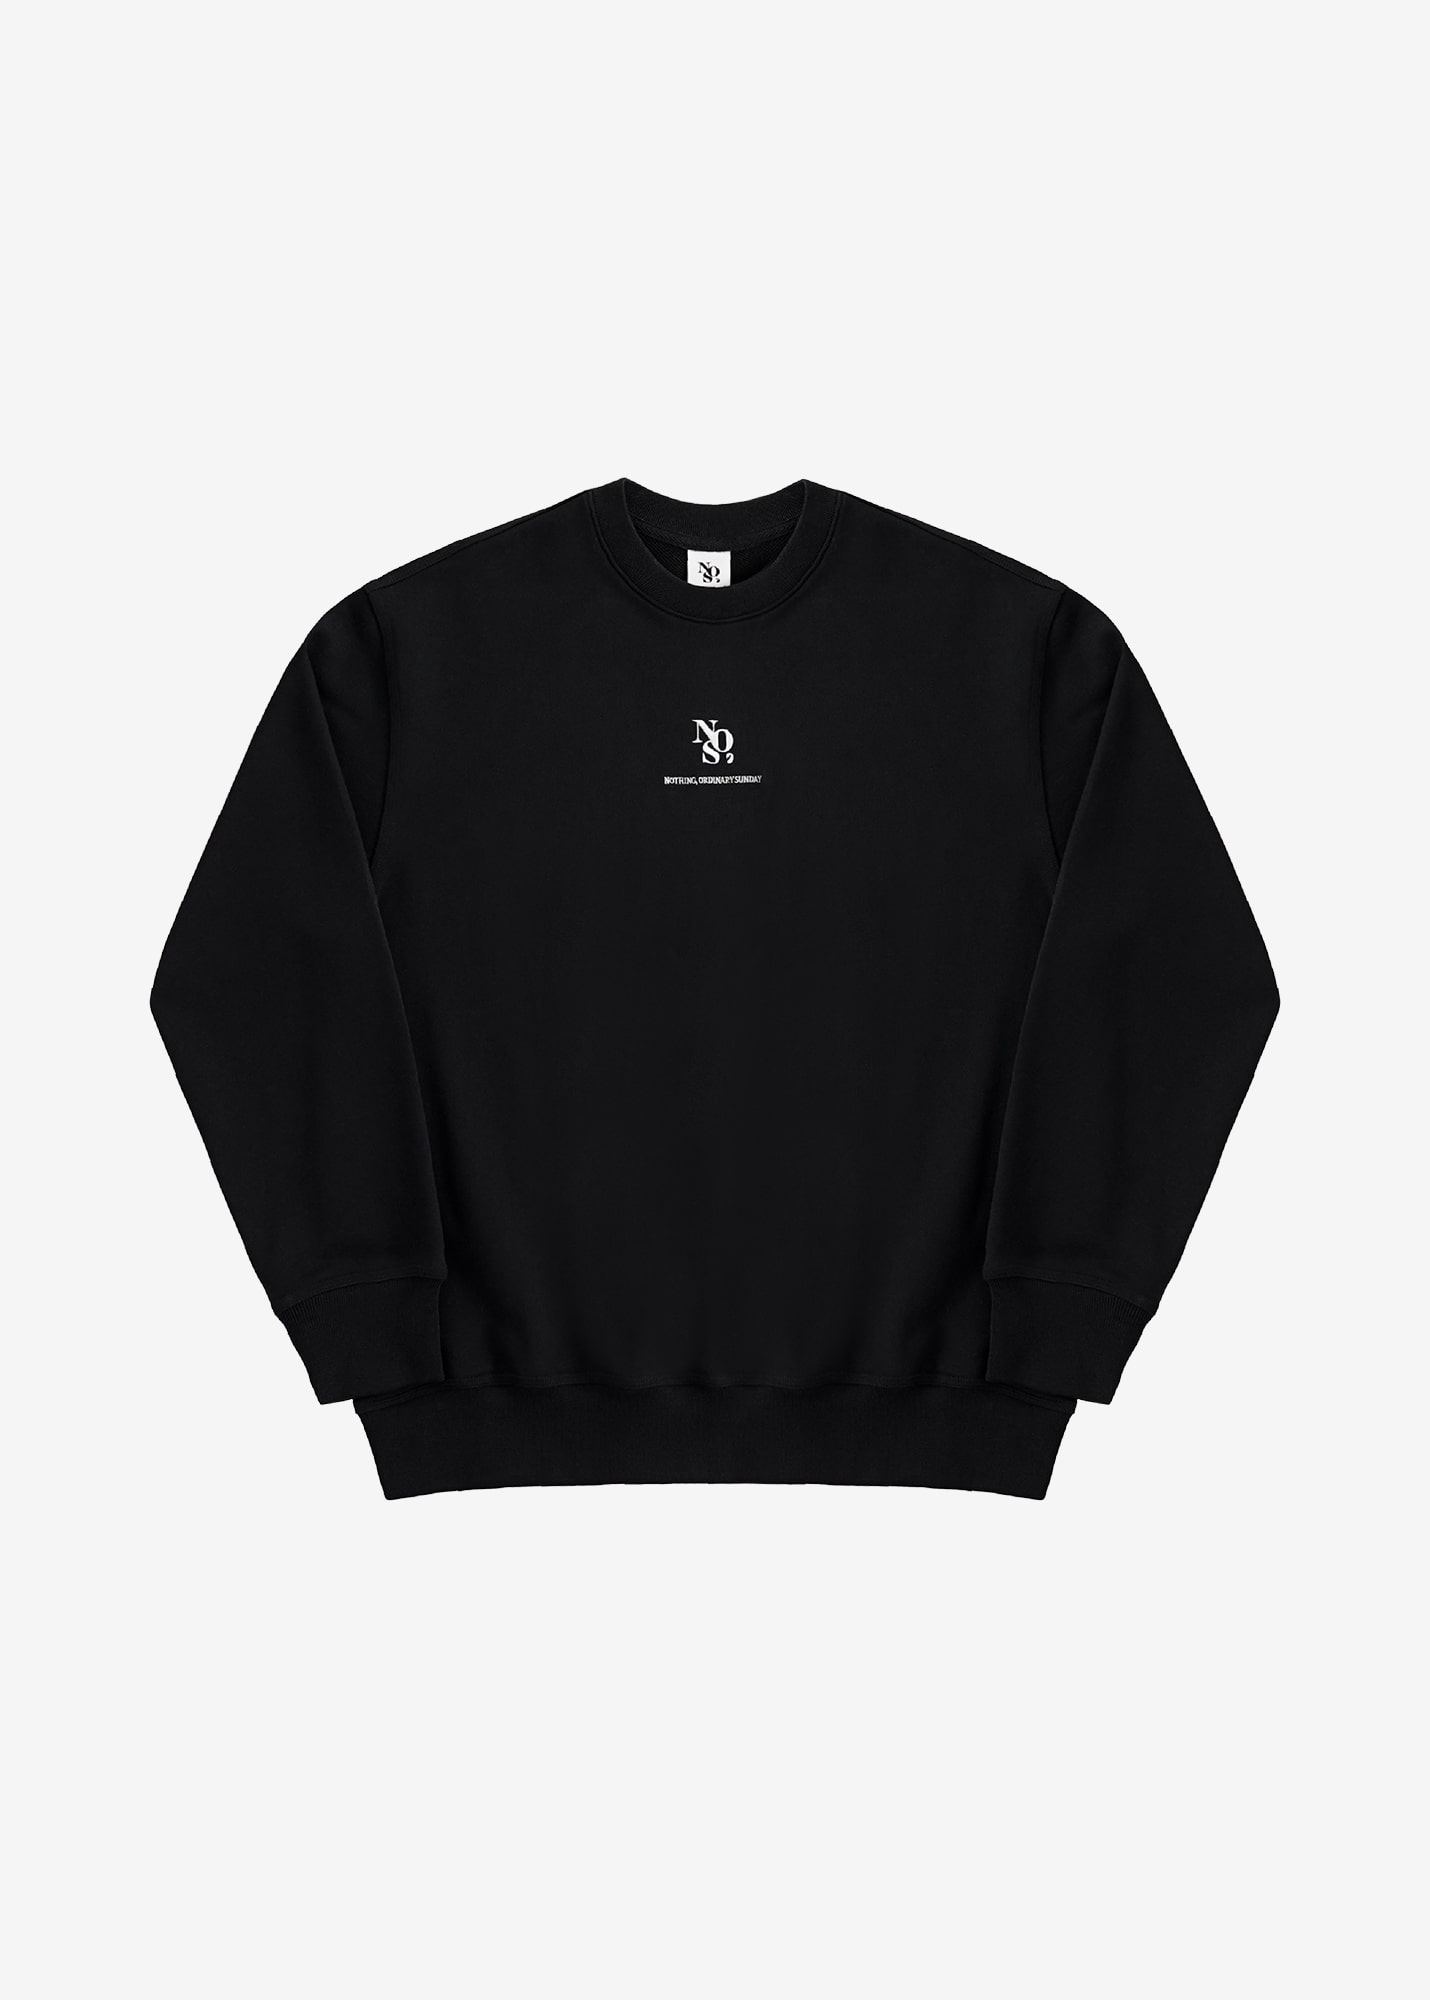 NOS7 Center Sweatshirt - Black